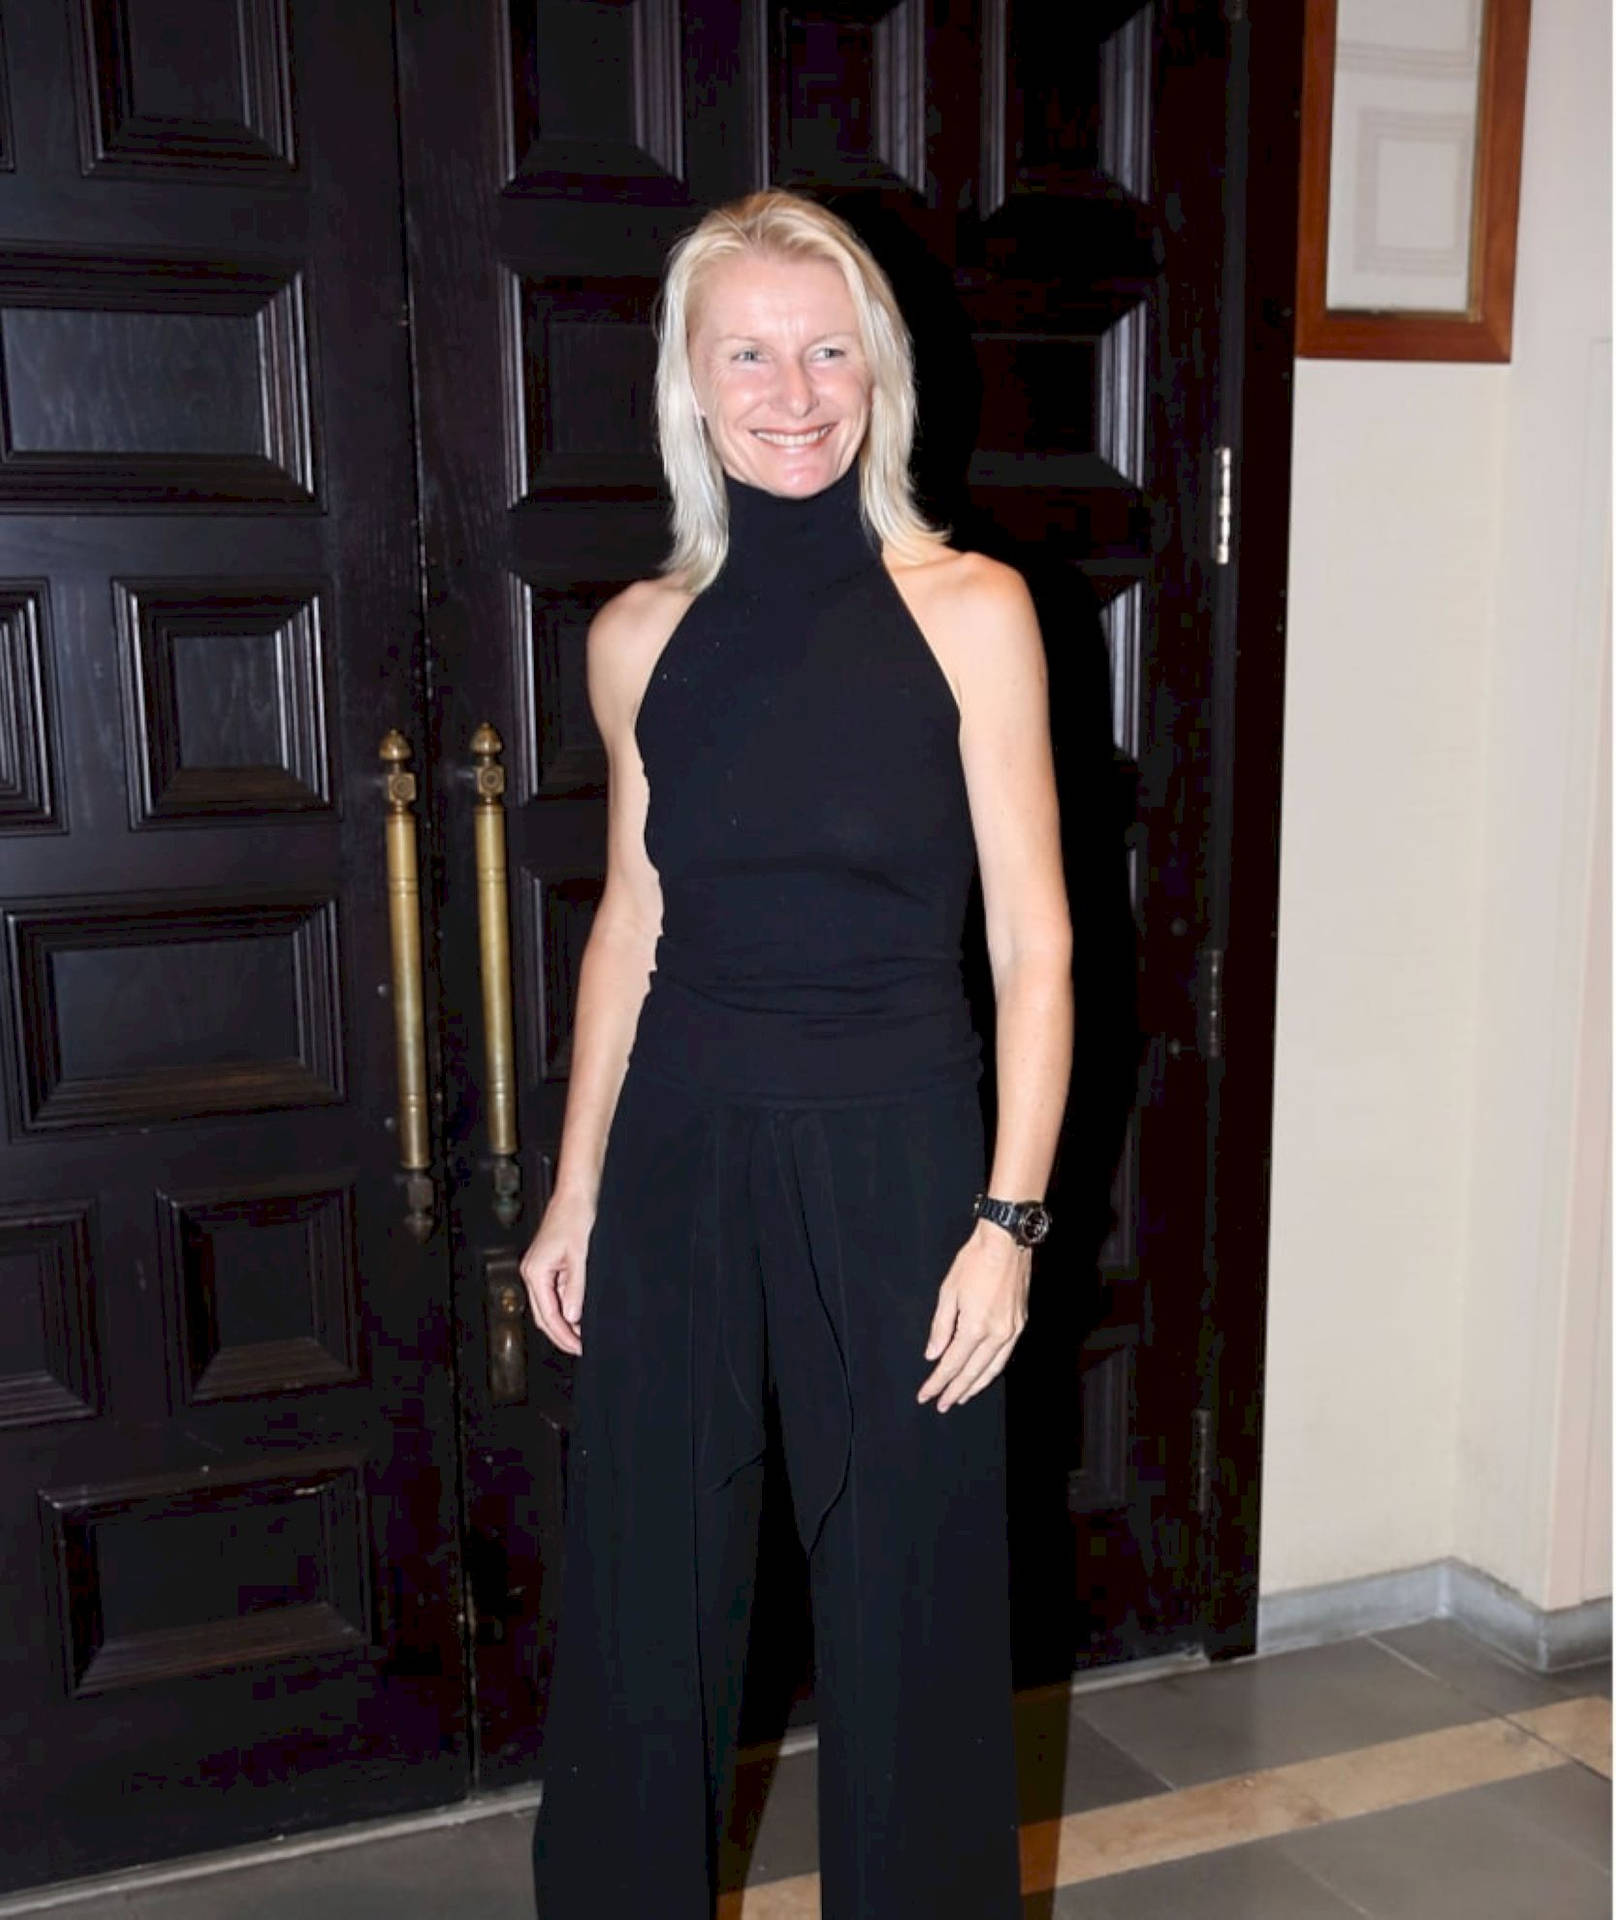 Jana Novotna, Tennis Legend, Dressed Elegantly in Black Wallpaper